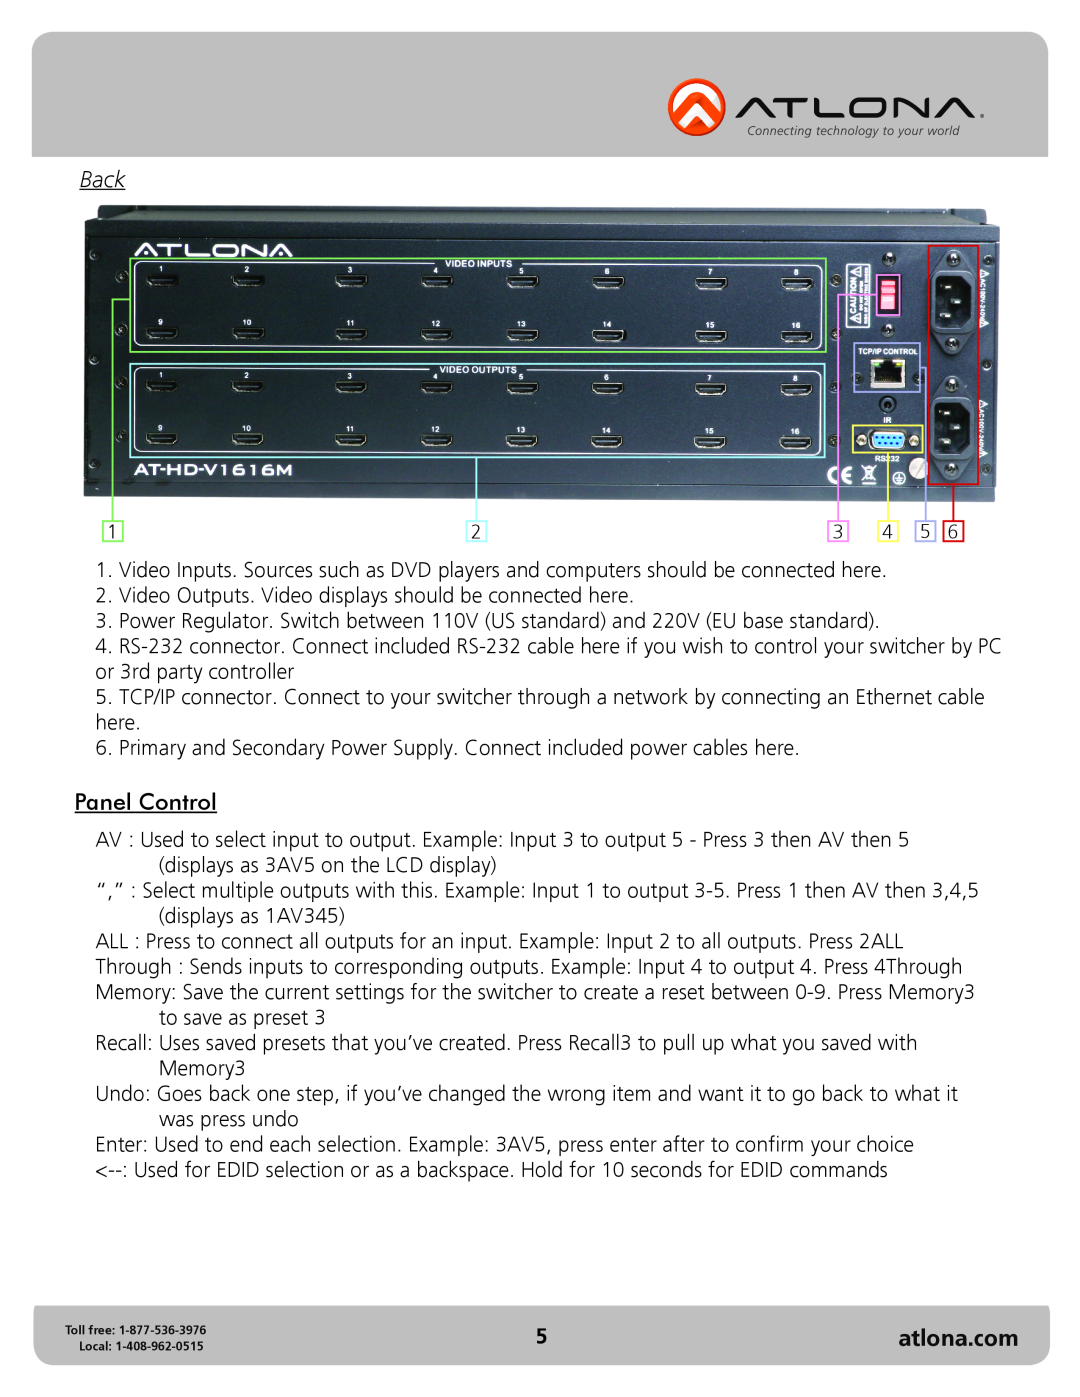 Atlona AT-HD-V1616M user manual Back, Panel Control, atlona.com 